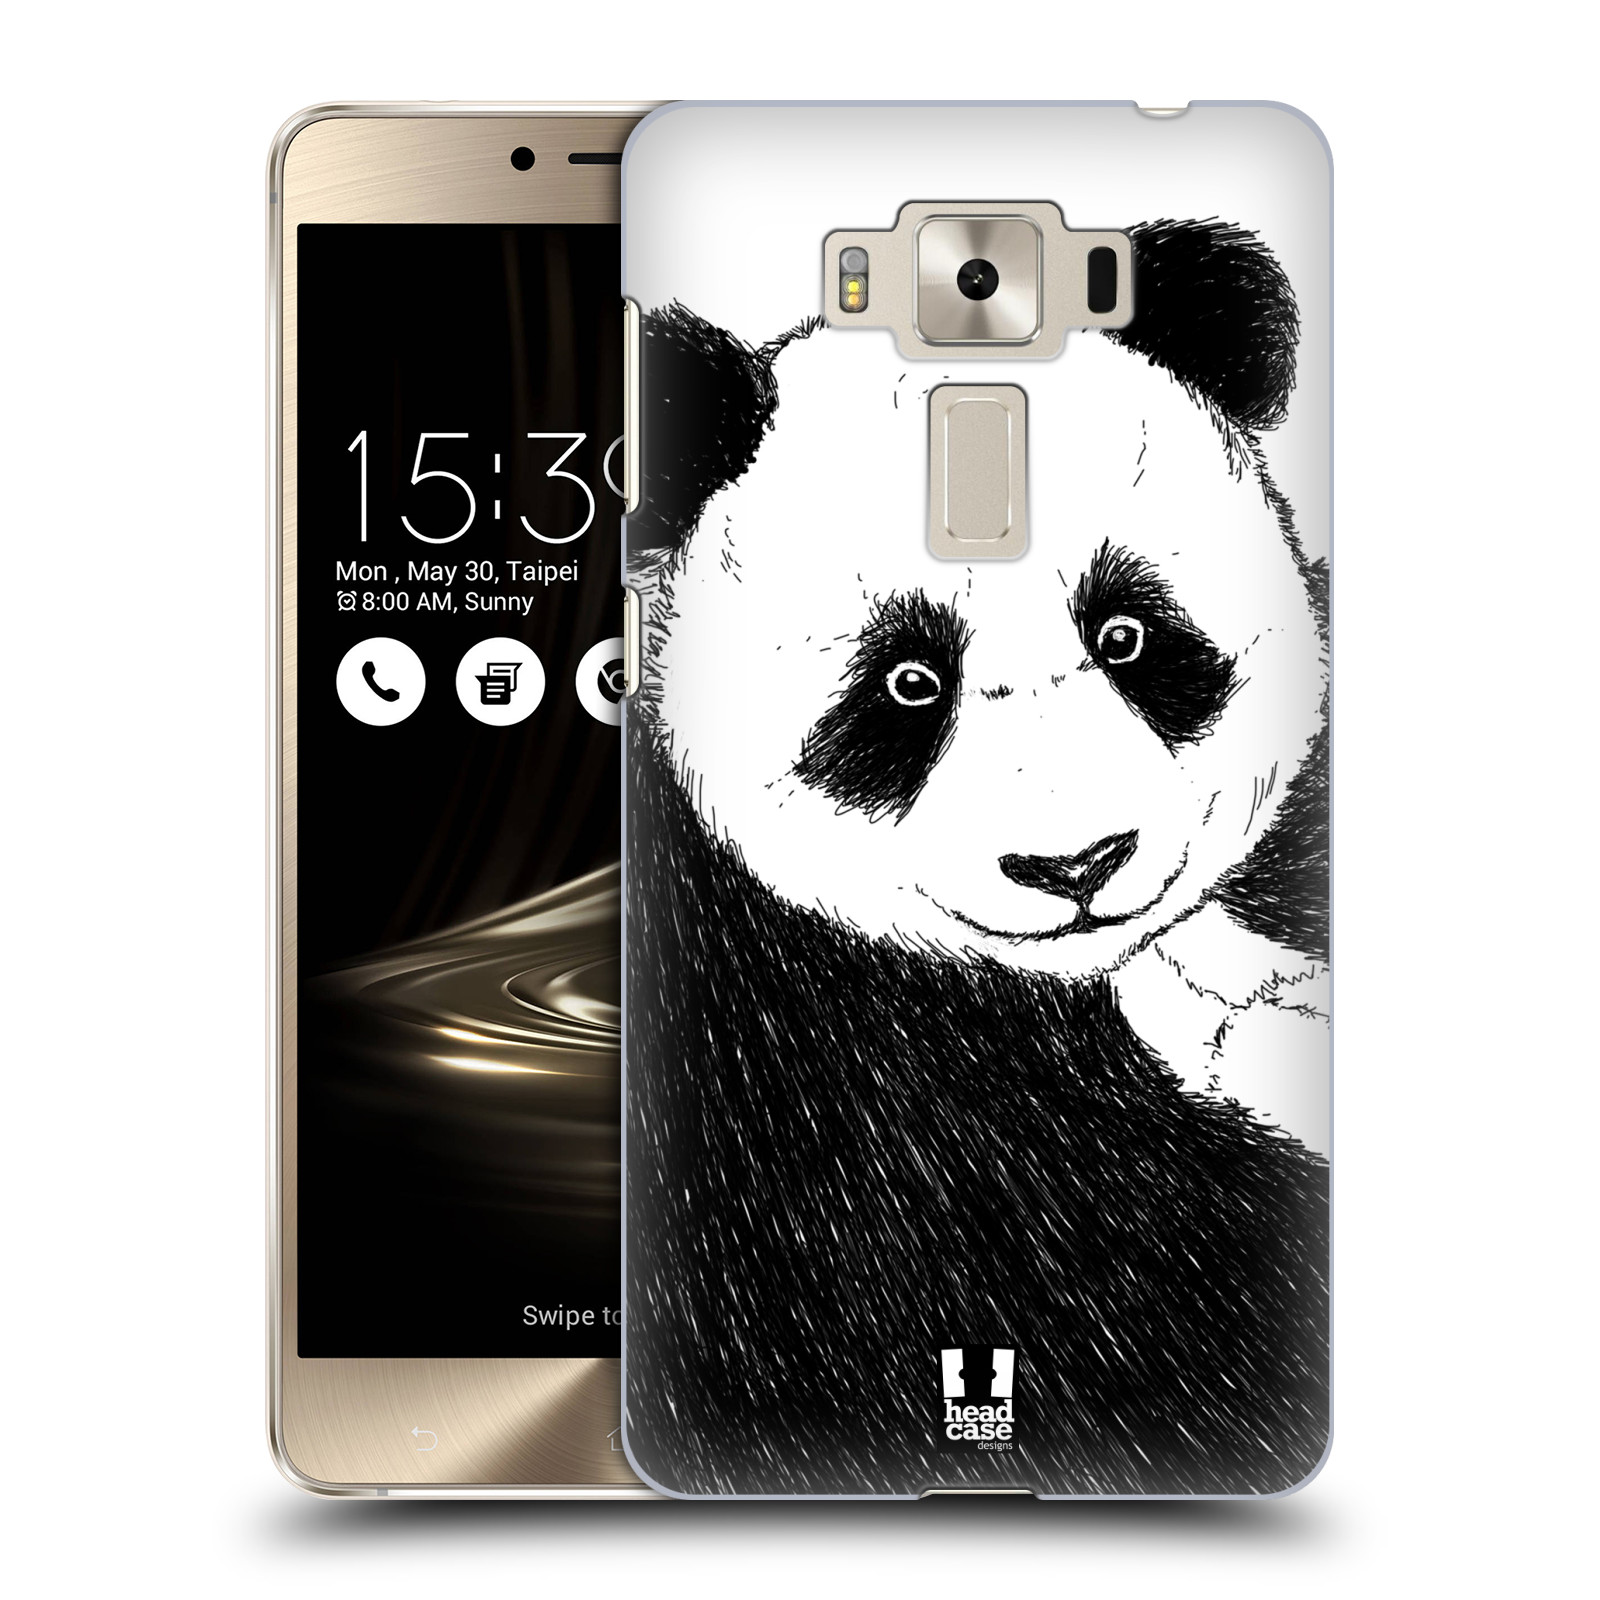 HEAD CASE plastový obal na mobil Asus Zenfone 3 DELUXE ZS550KL vzor Kreslená zvířátka černá a bílá panda